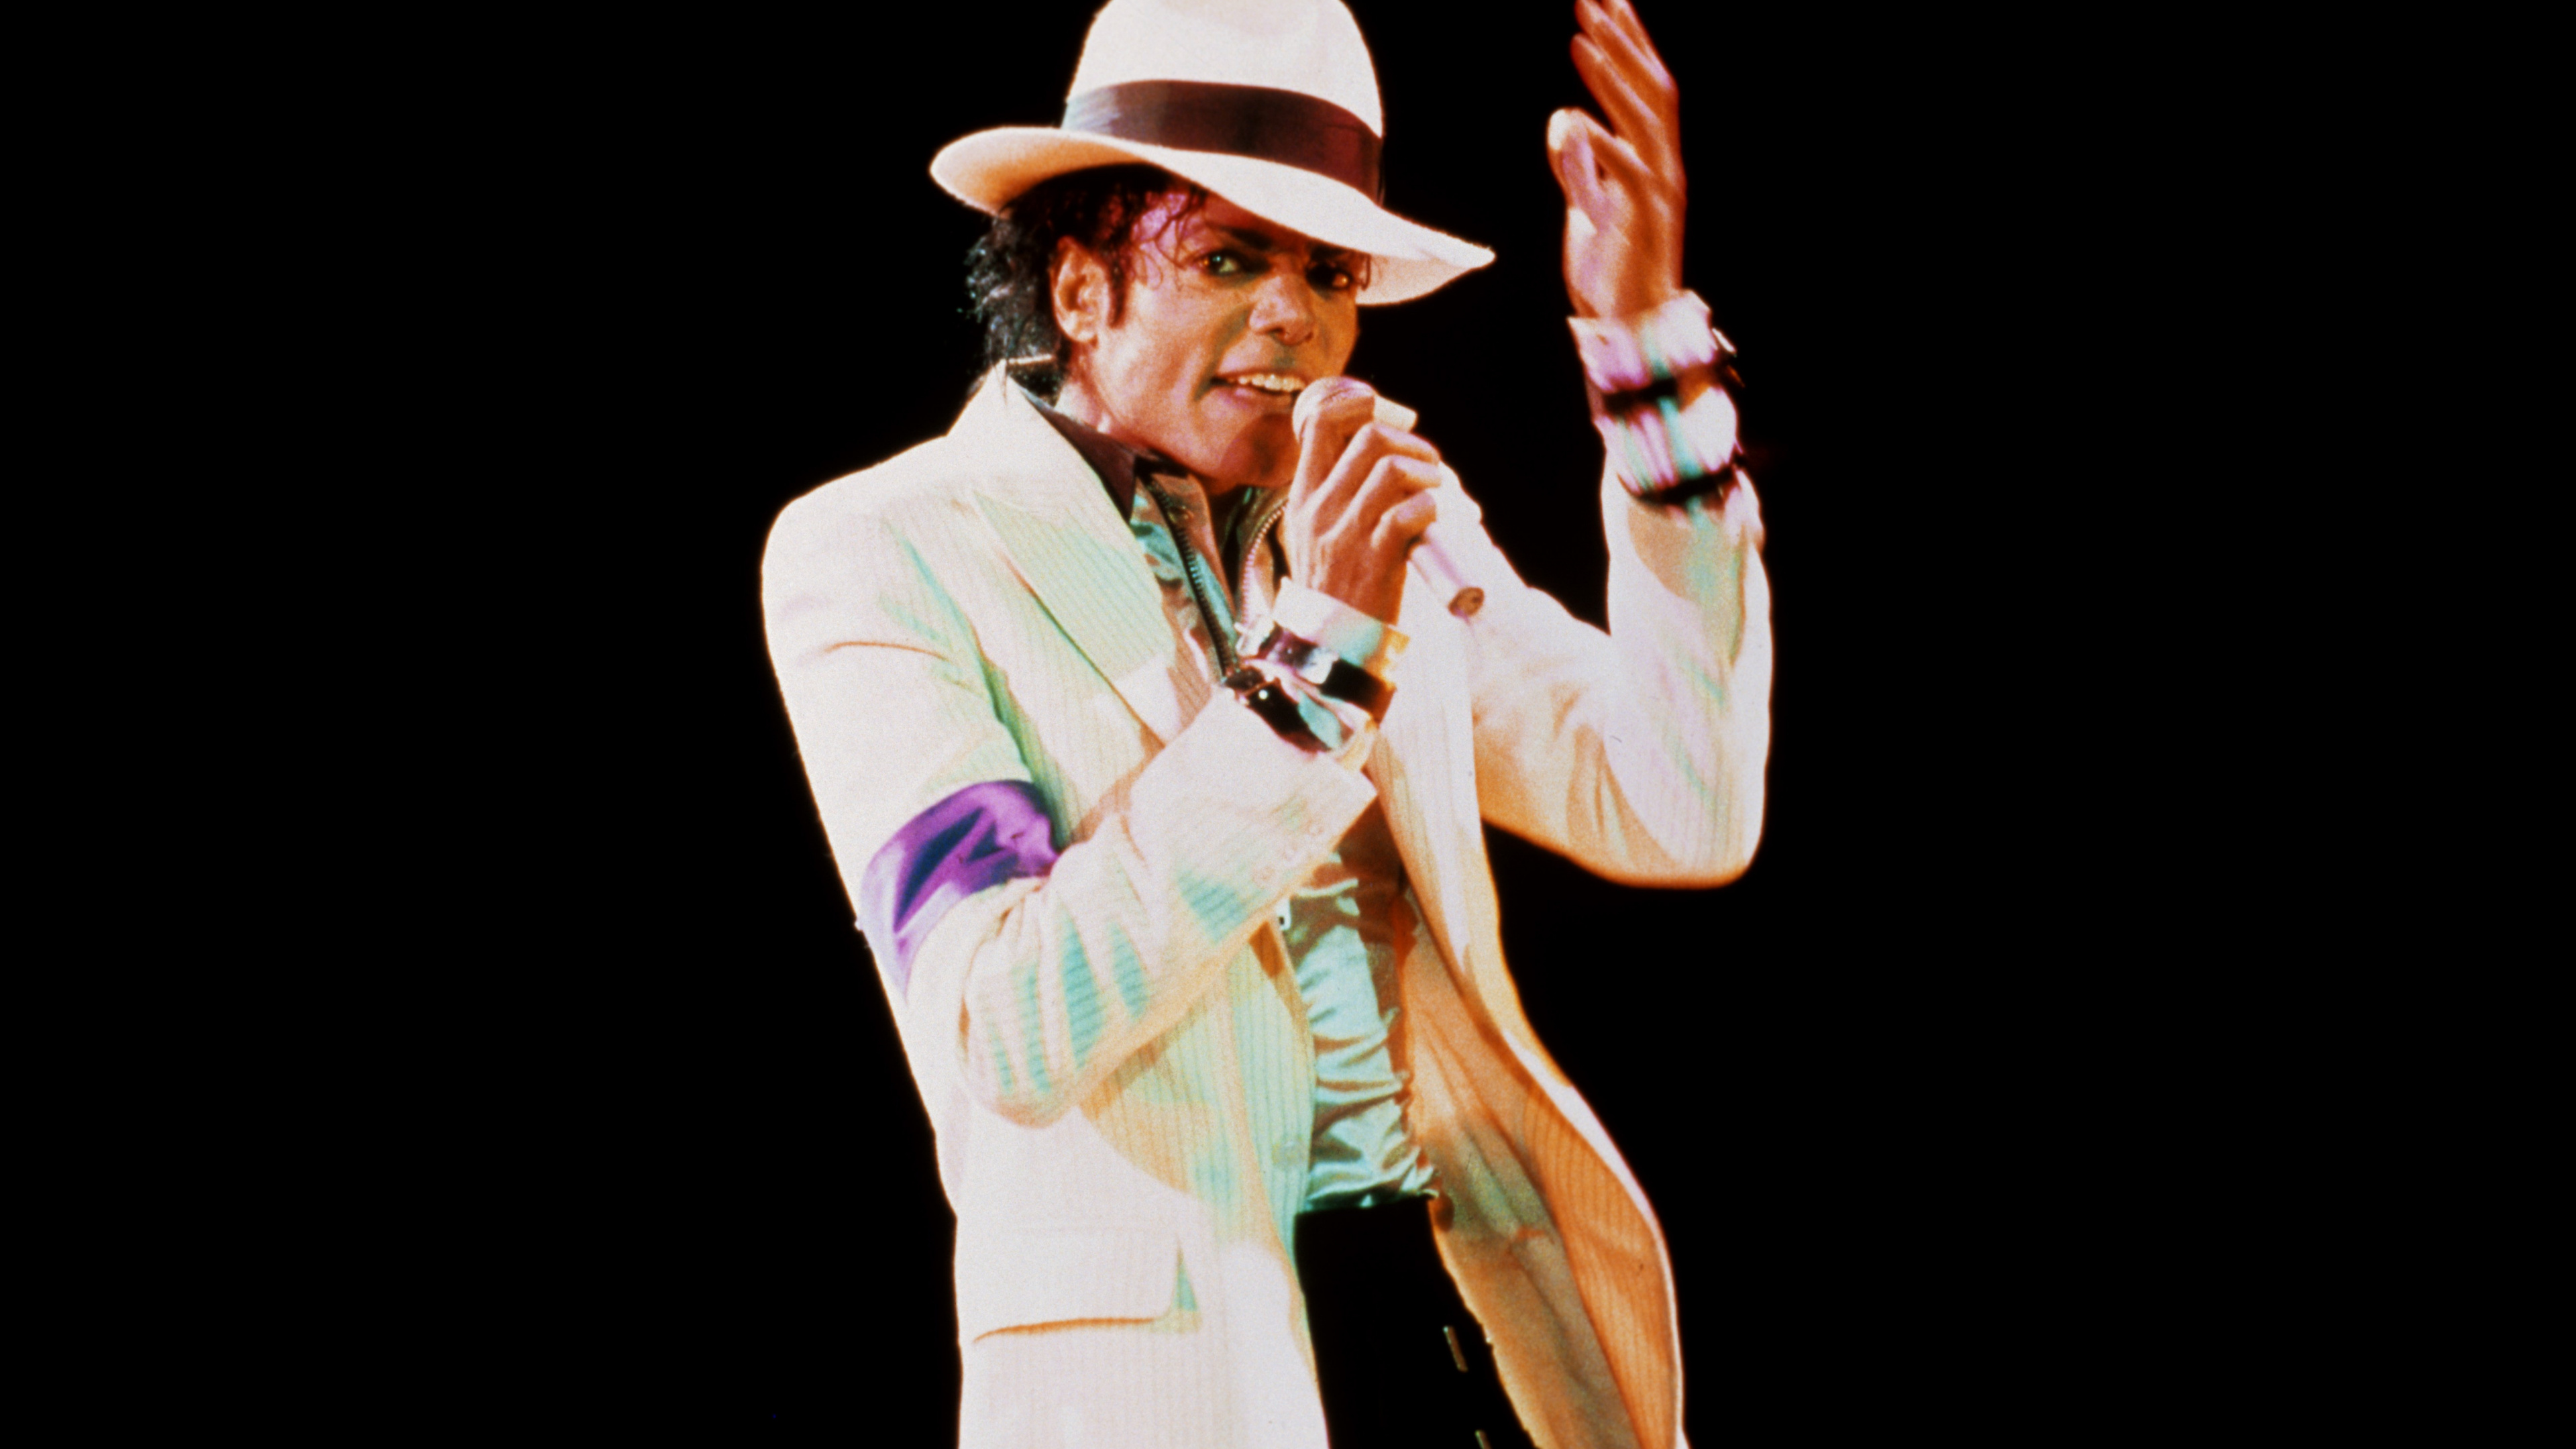 Michael Jackson, Rendimiento, el Artista de Música, Artes Escénicas, Evento. Wallpaper in 3840x2160 Resolution